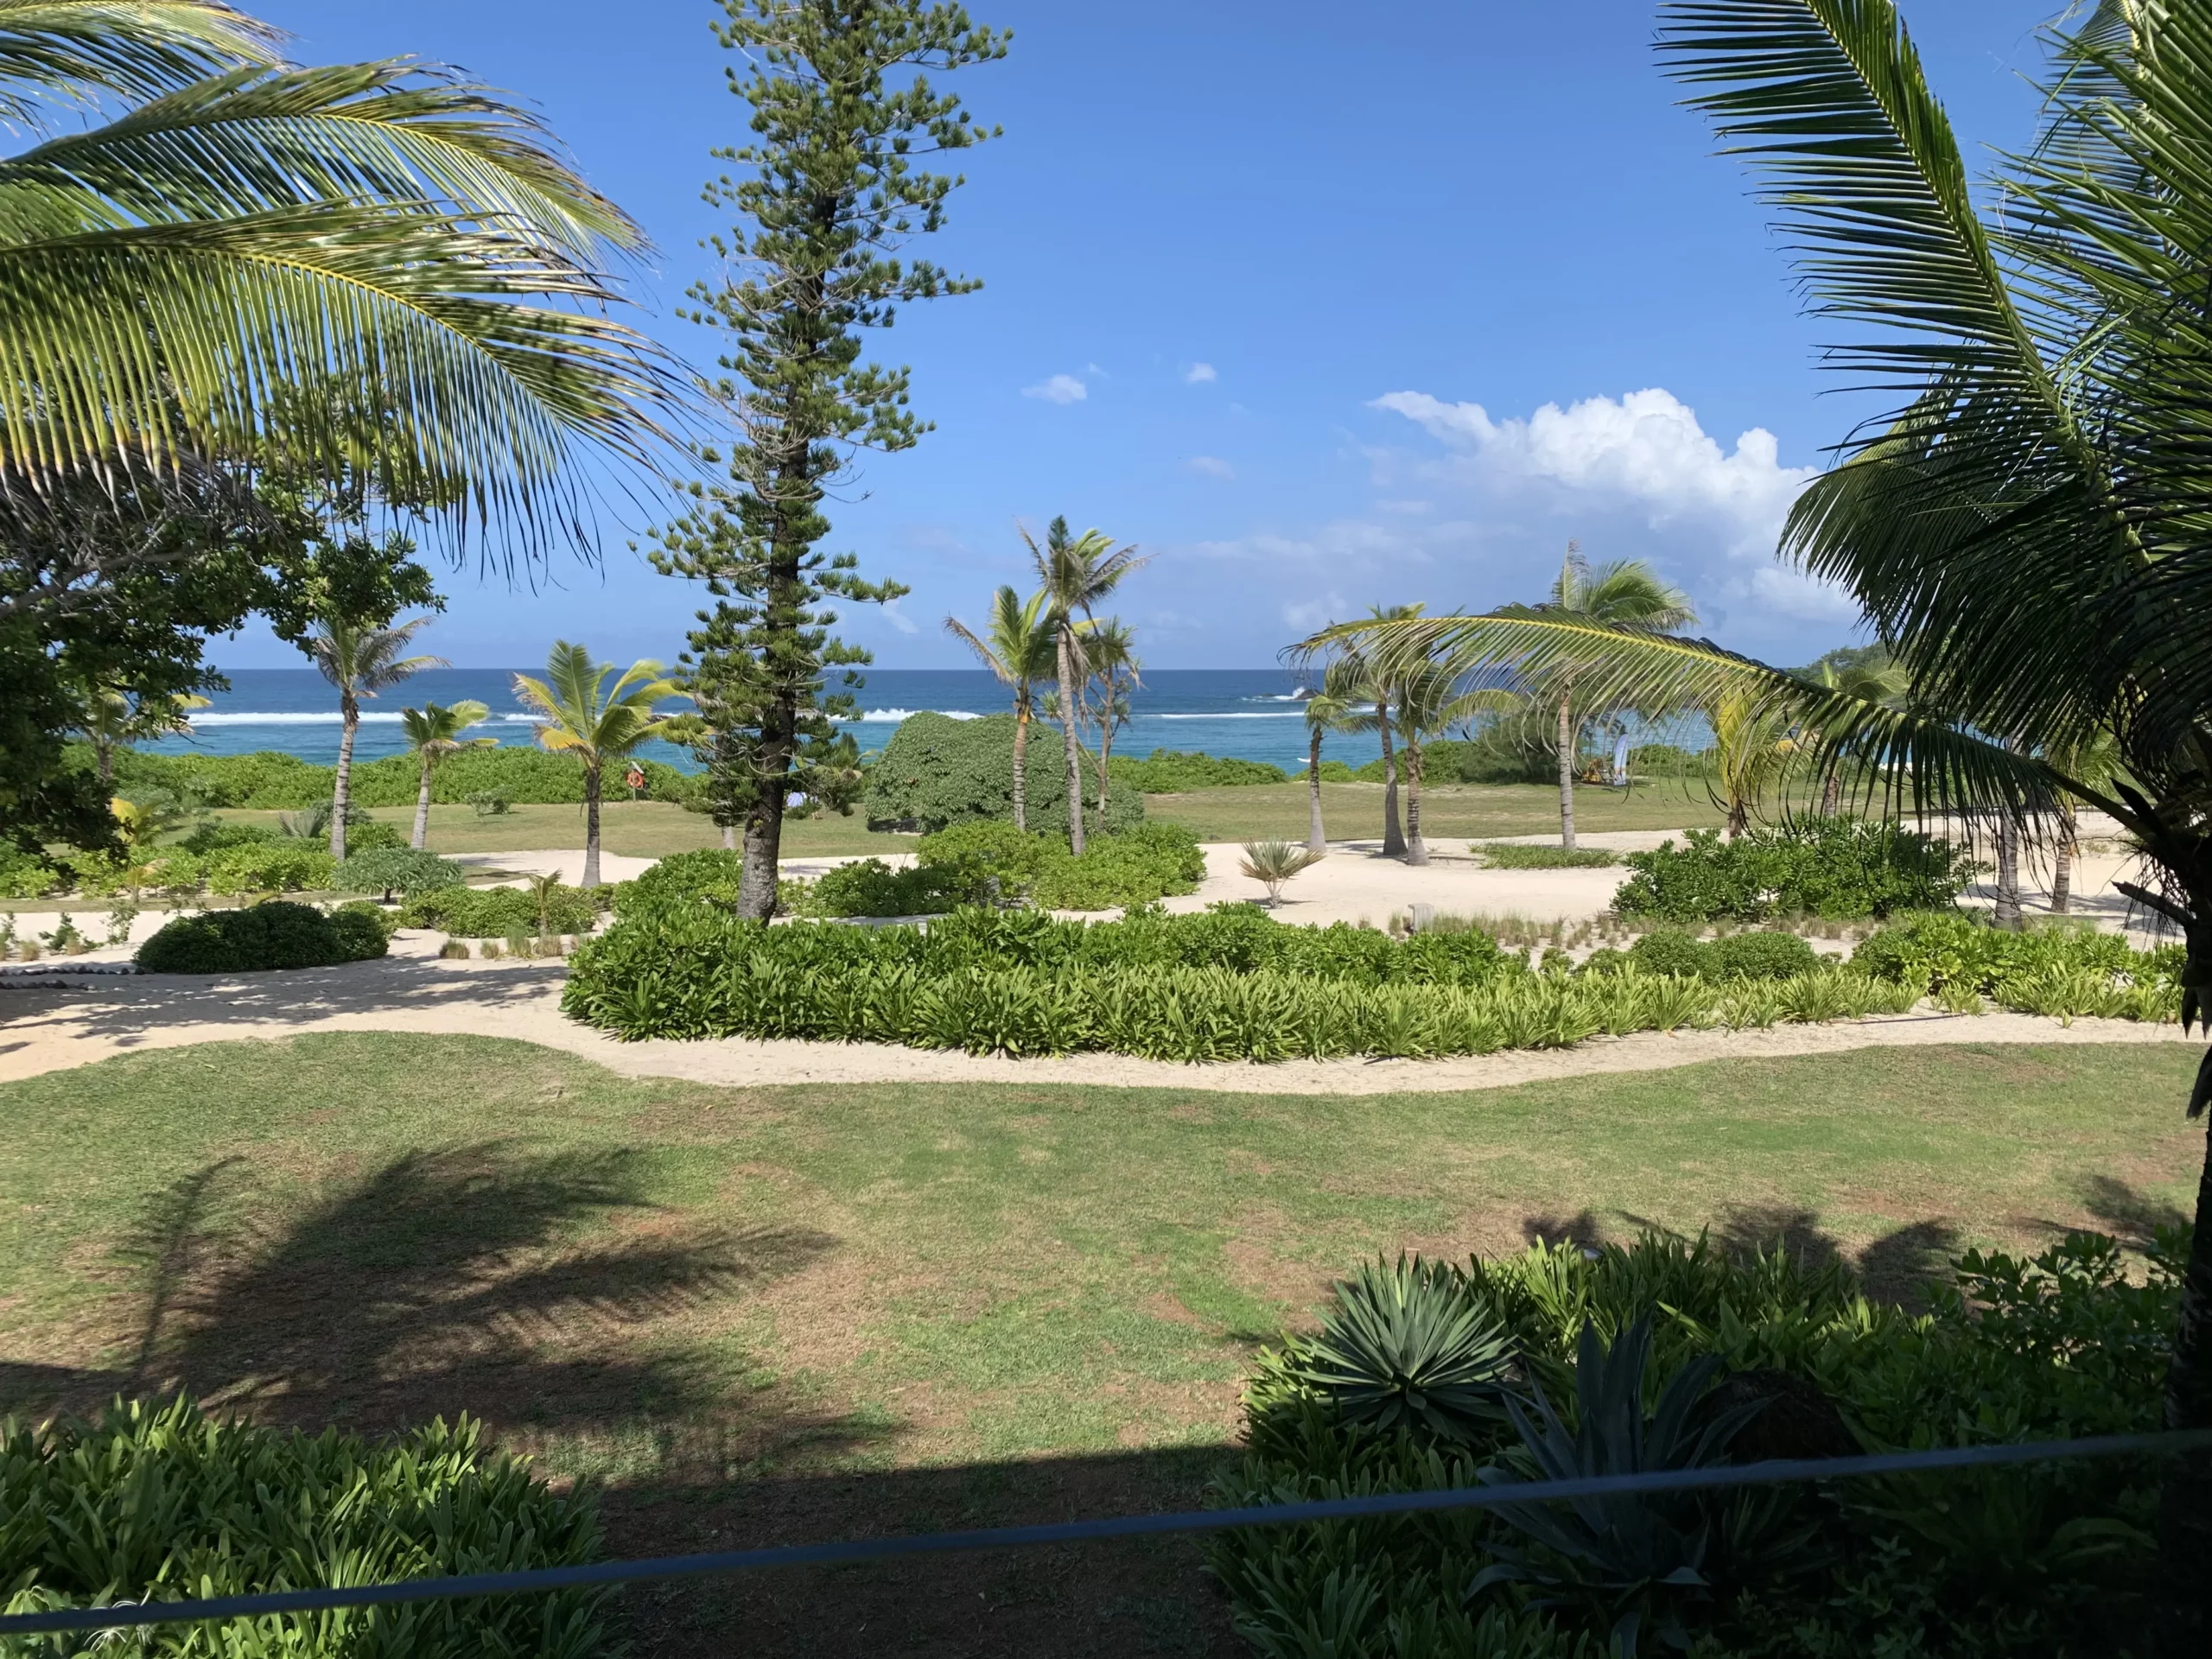 besten Tipps für den Mauritius-Urlaub Palmen